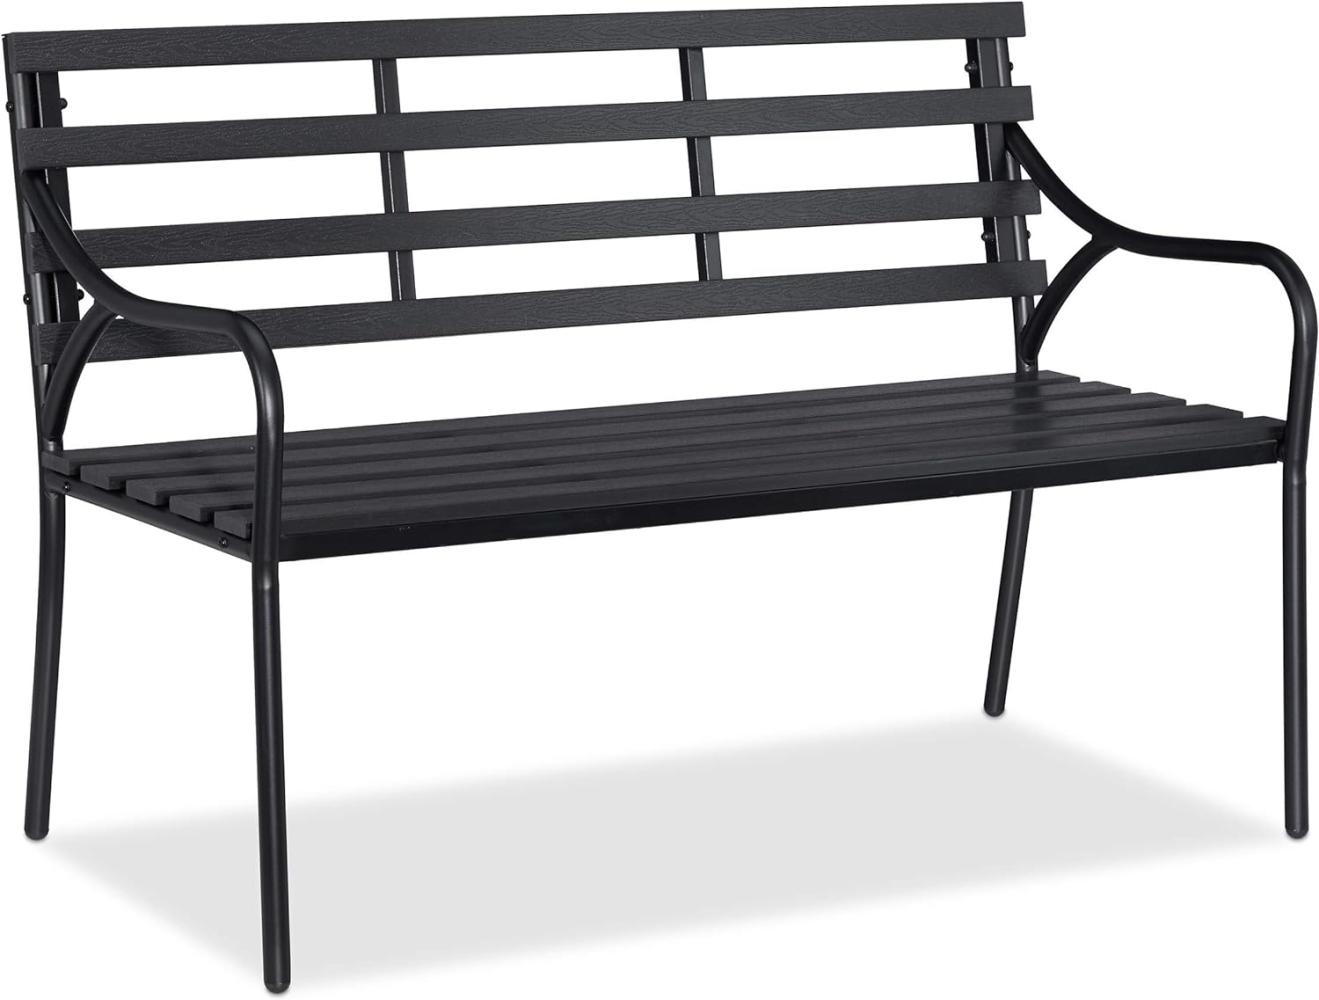 Relaxdays - Gartenbank, 2-Sitzer, Balkon, Terrasse, stabil, robust, Parkbank, WPC, Stahl, HxBxT: 83 x 122 x 59 cm, schwarz Bild 1